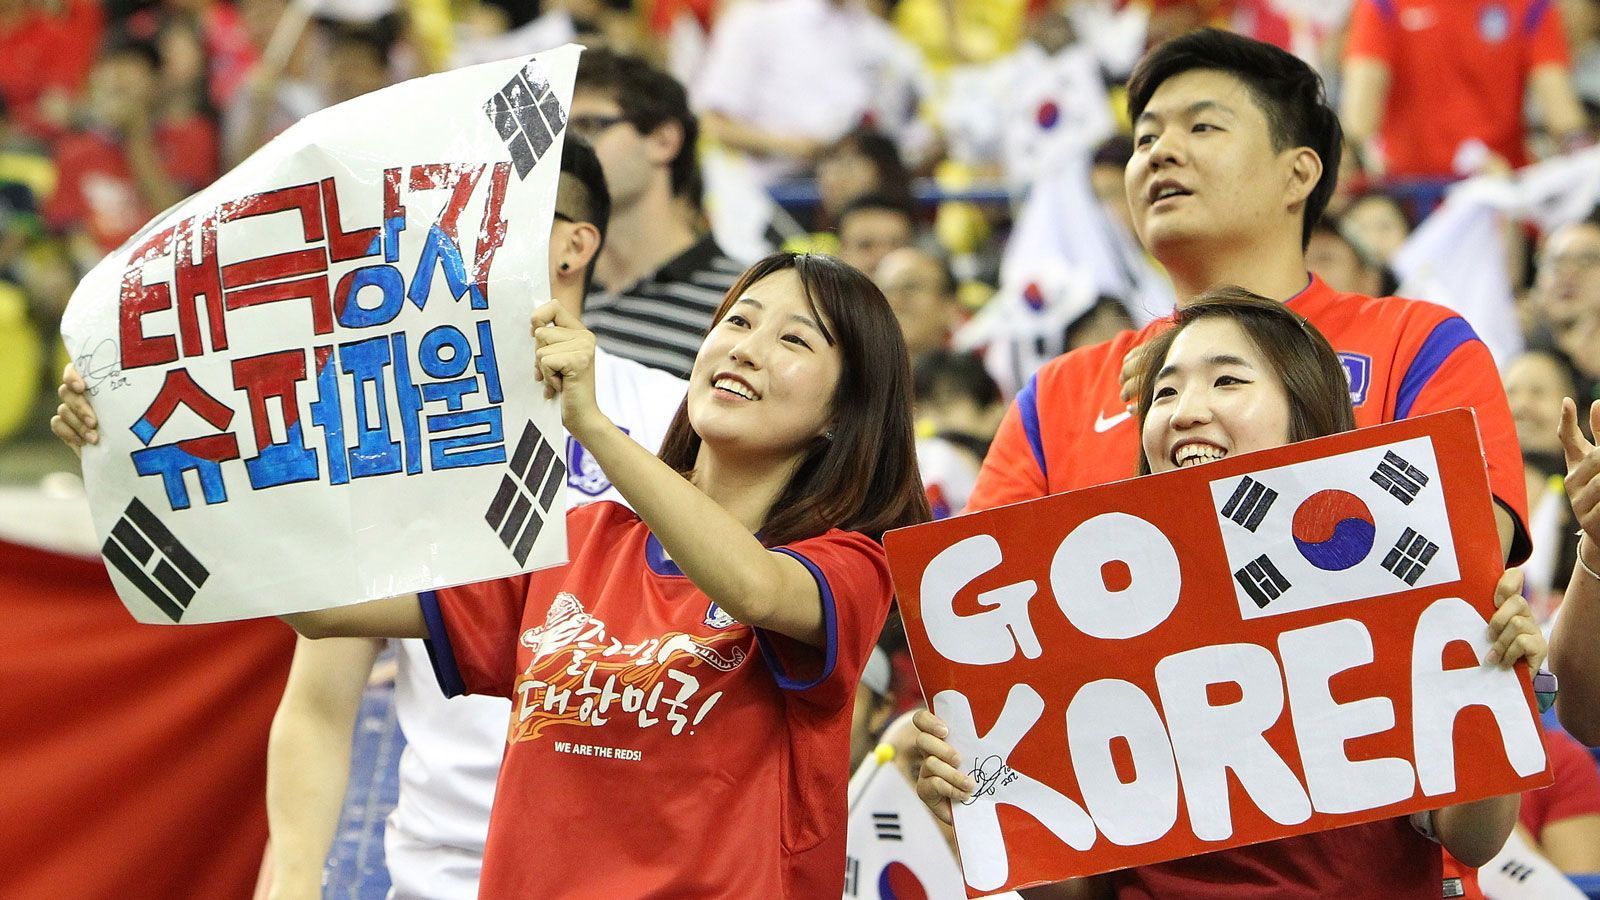 
                <strong>Südkorea</strong><br>
                Der südkoreanischen Präsident Moon Jae-in äußerte am Rande der WM 2018 in Russland gegenüber Fifa-Boss Gianni Infantino, eine Bewerbung in Erwägung zu ziehen. Daraufhin signalisierte der koreanische Fußballverband Nordkorea, China und Japan Gesprächsbereitschaft, so die Nachrichtenagentur Reuters. Die Antworten stehen noch aus.
              